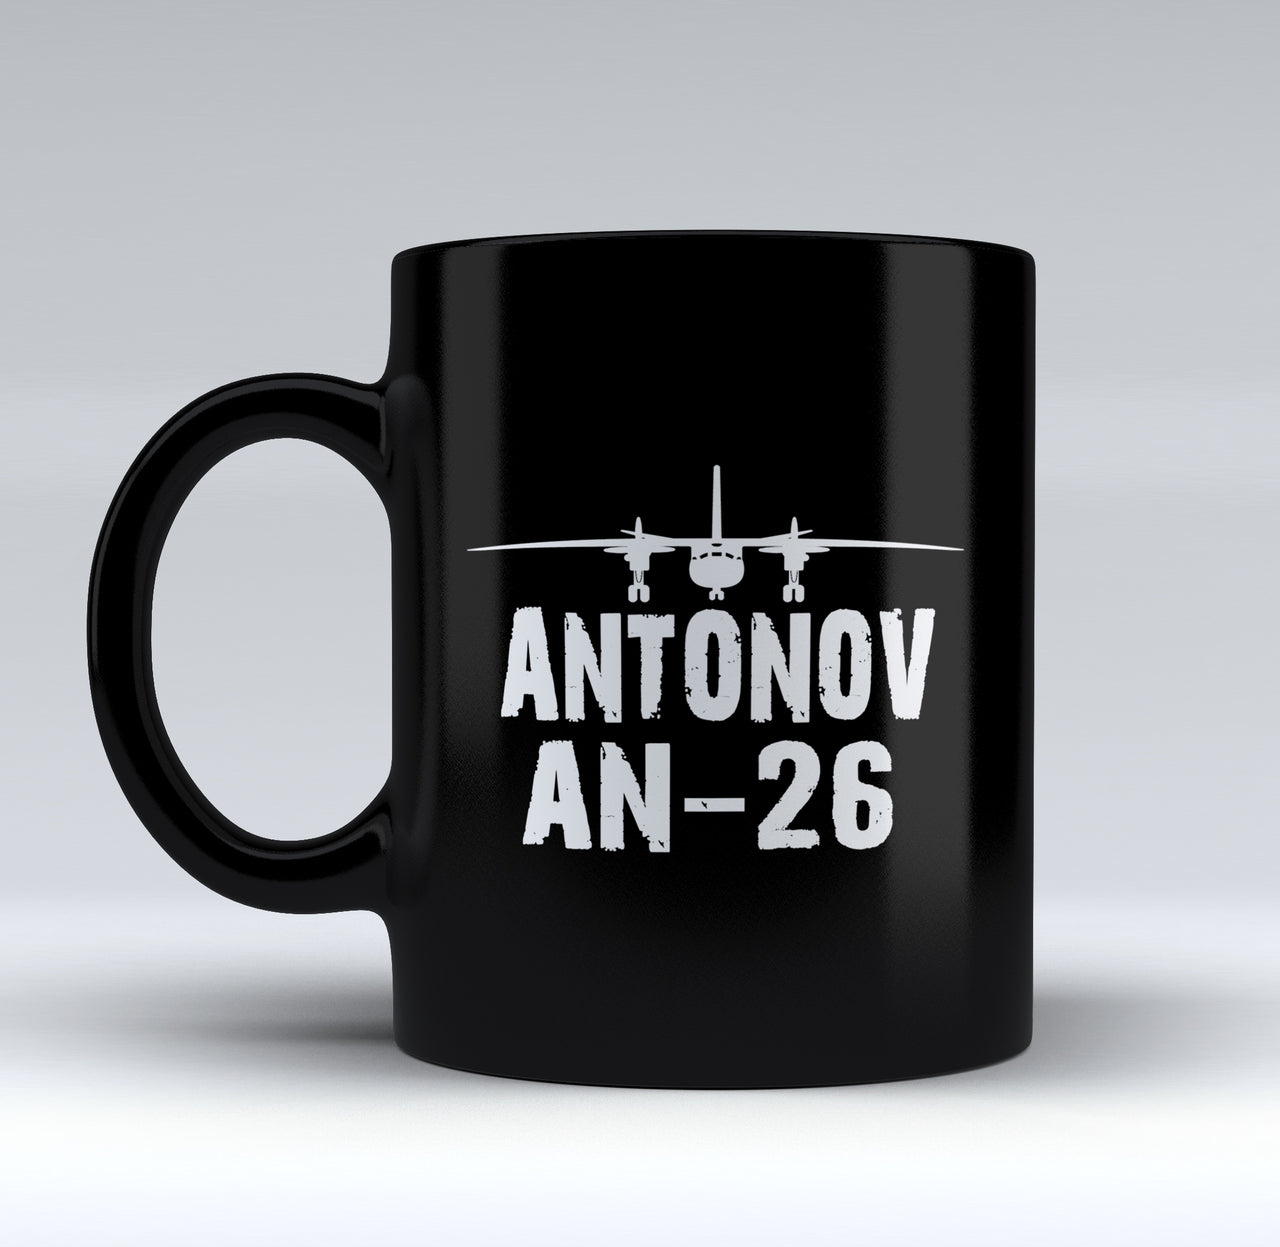 Antonov AN-26 & Plane Designed Black Mugs